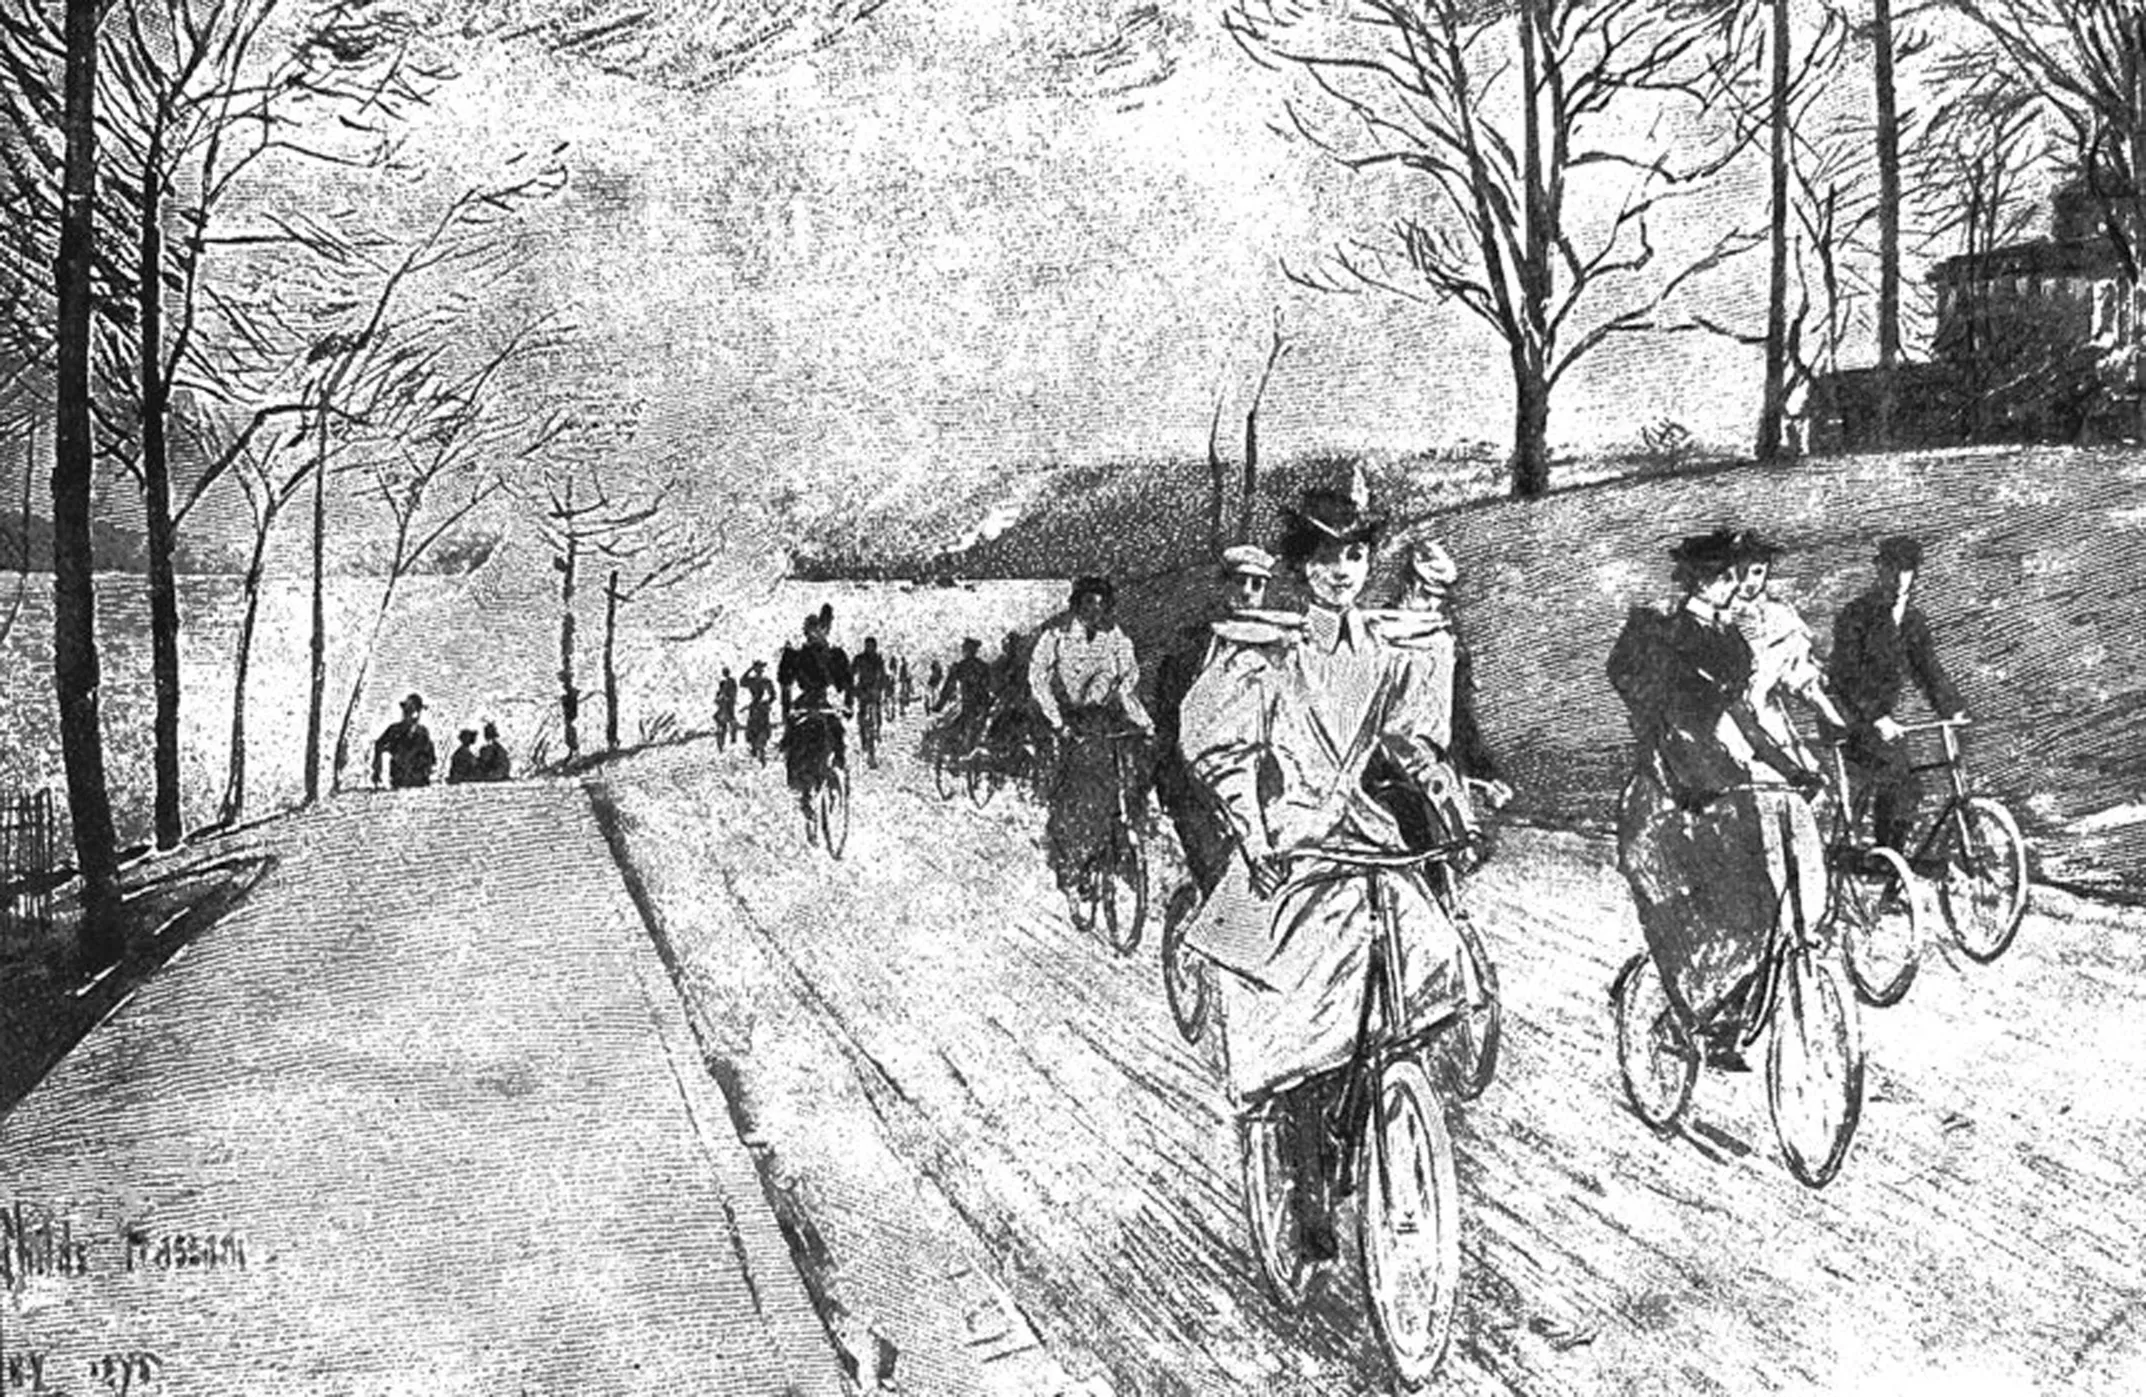 A finals del segle XIX, la gent va perdre la por i l’ús de la bicicleta es va incrementar